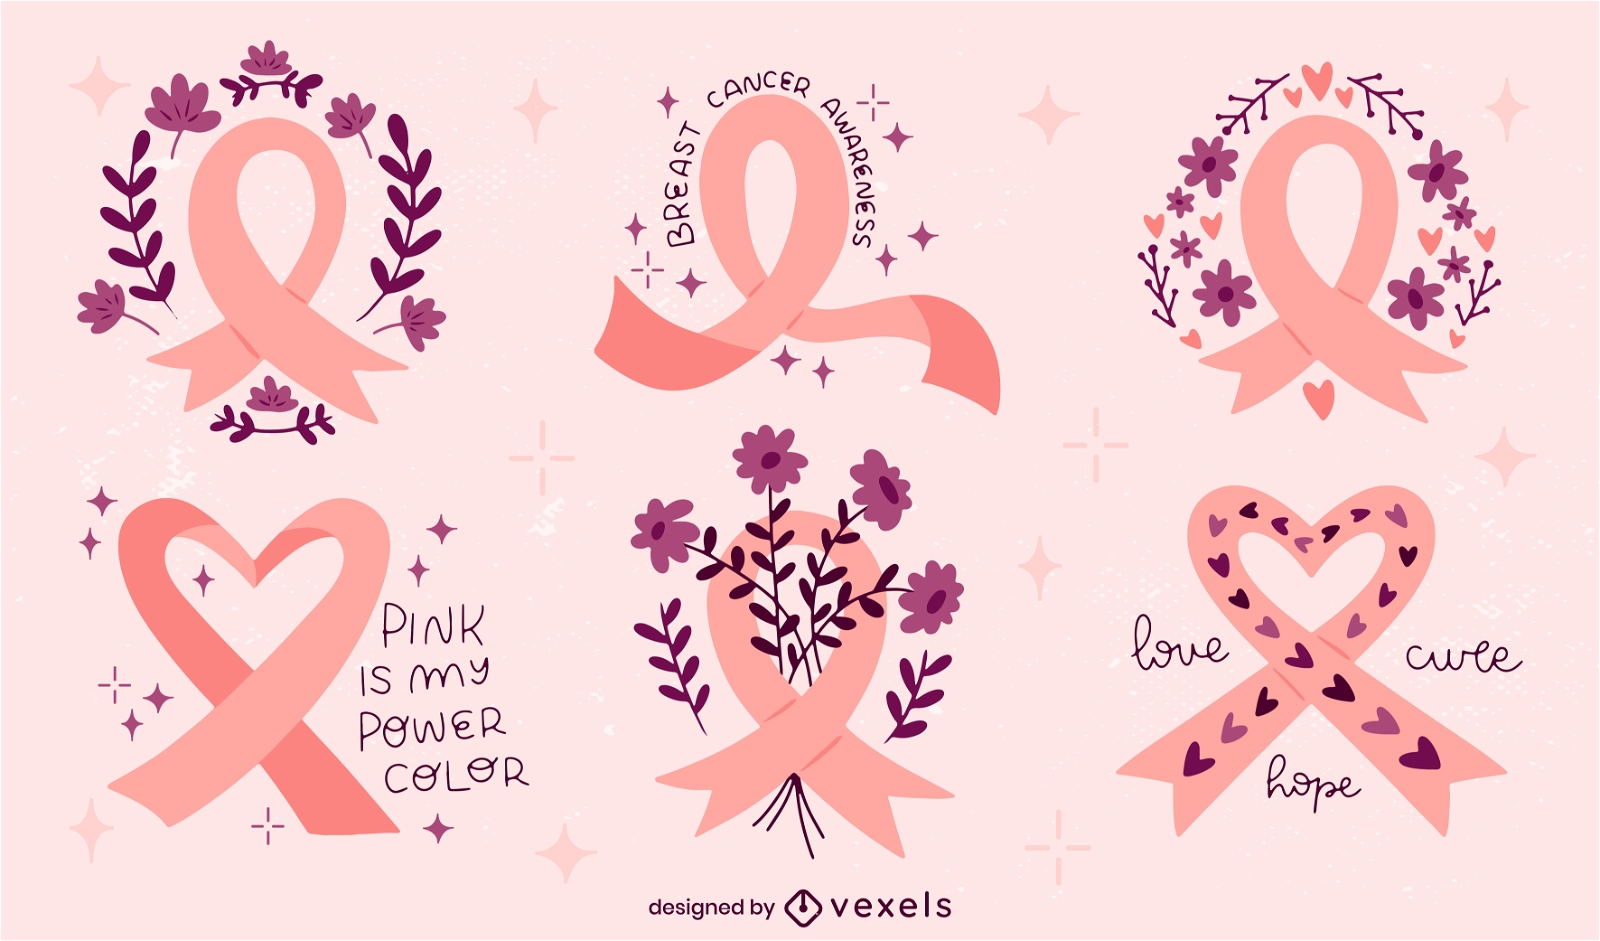 Fita pink power para o mês de conscientização sobre o câncer de